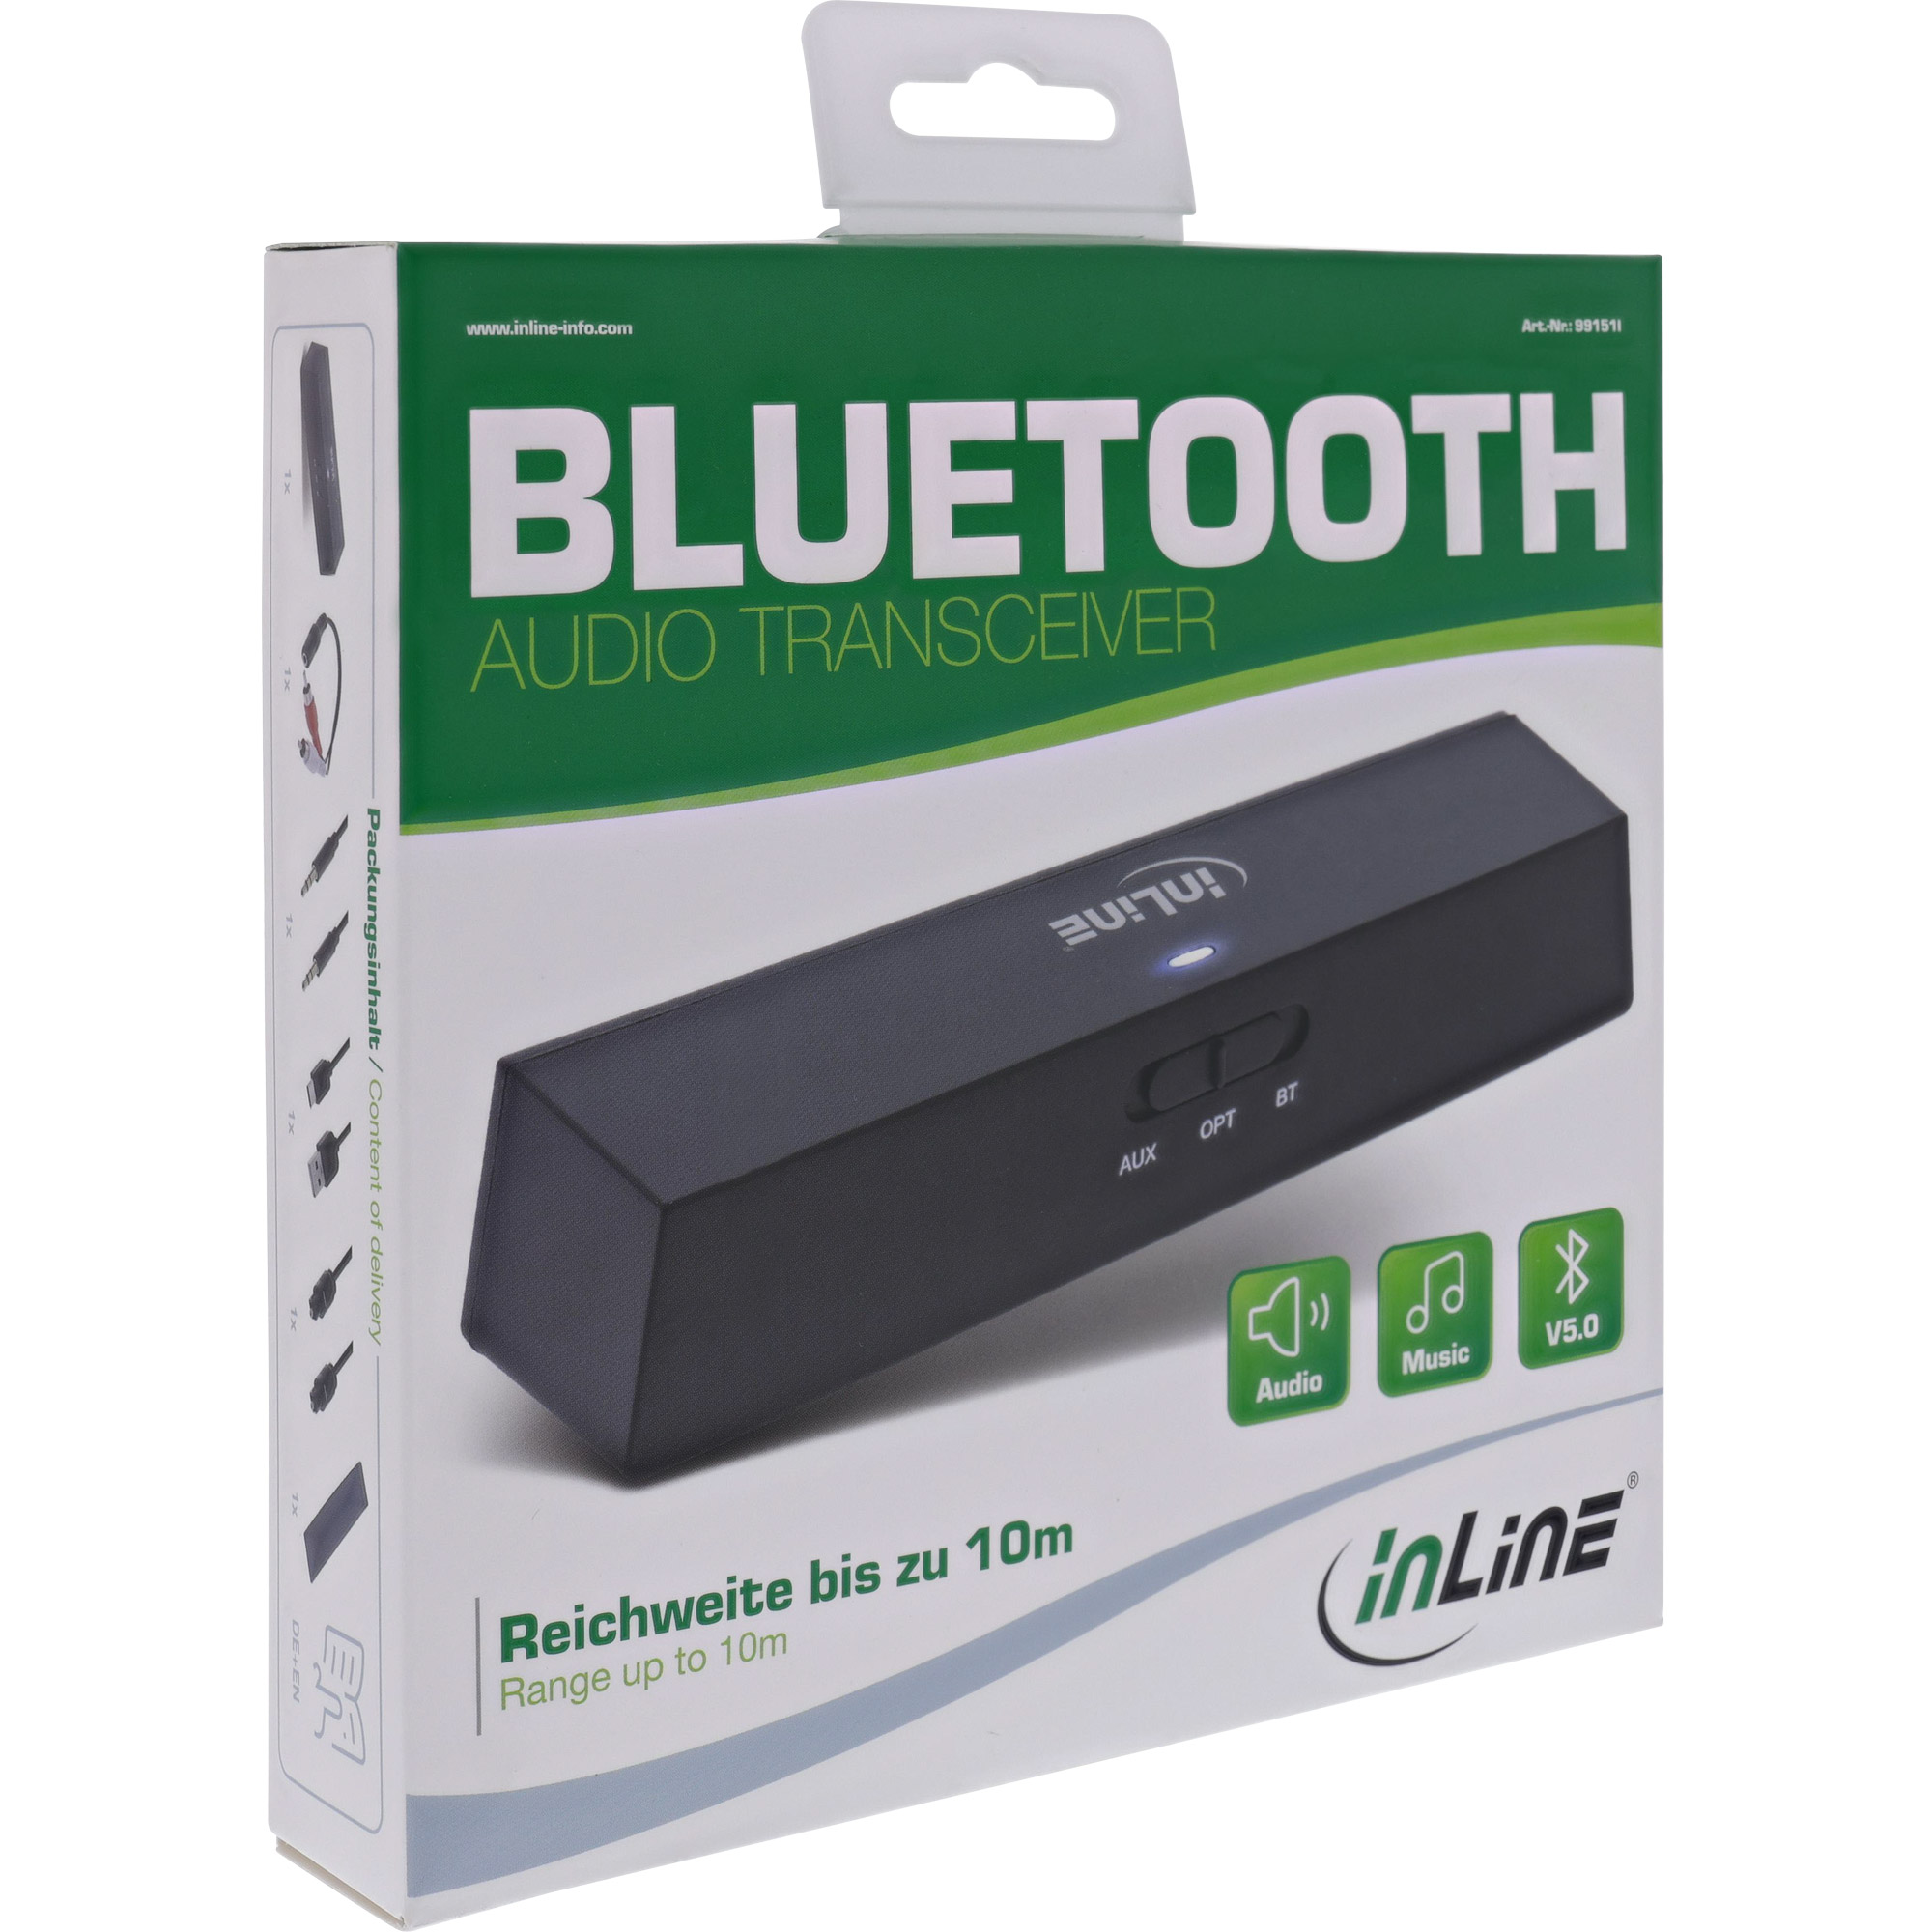 Bluetooth Audio Transceiver BT 5.0 : hier online kaufen